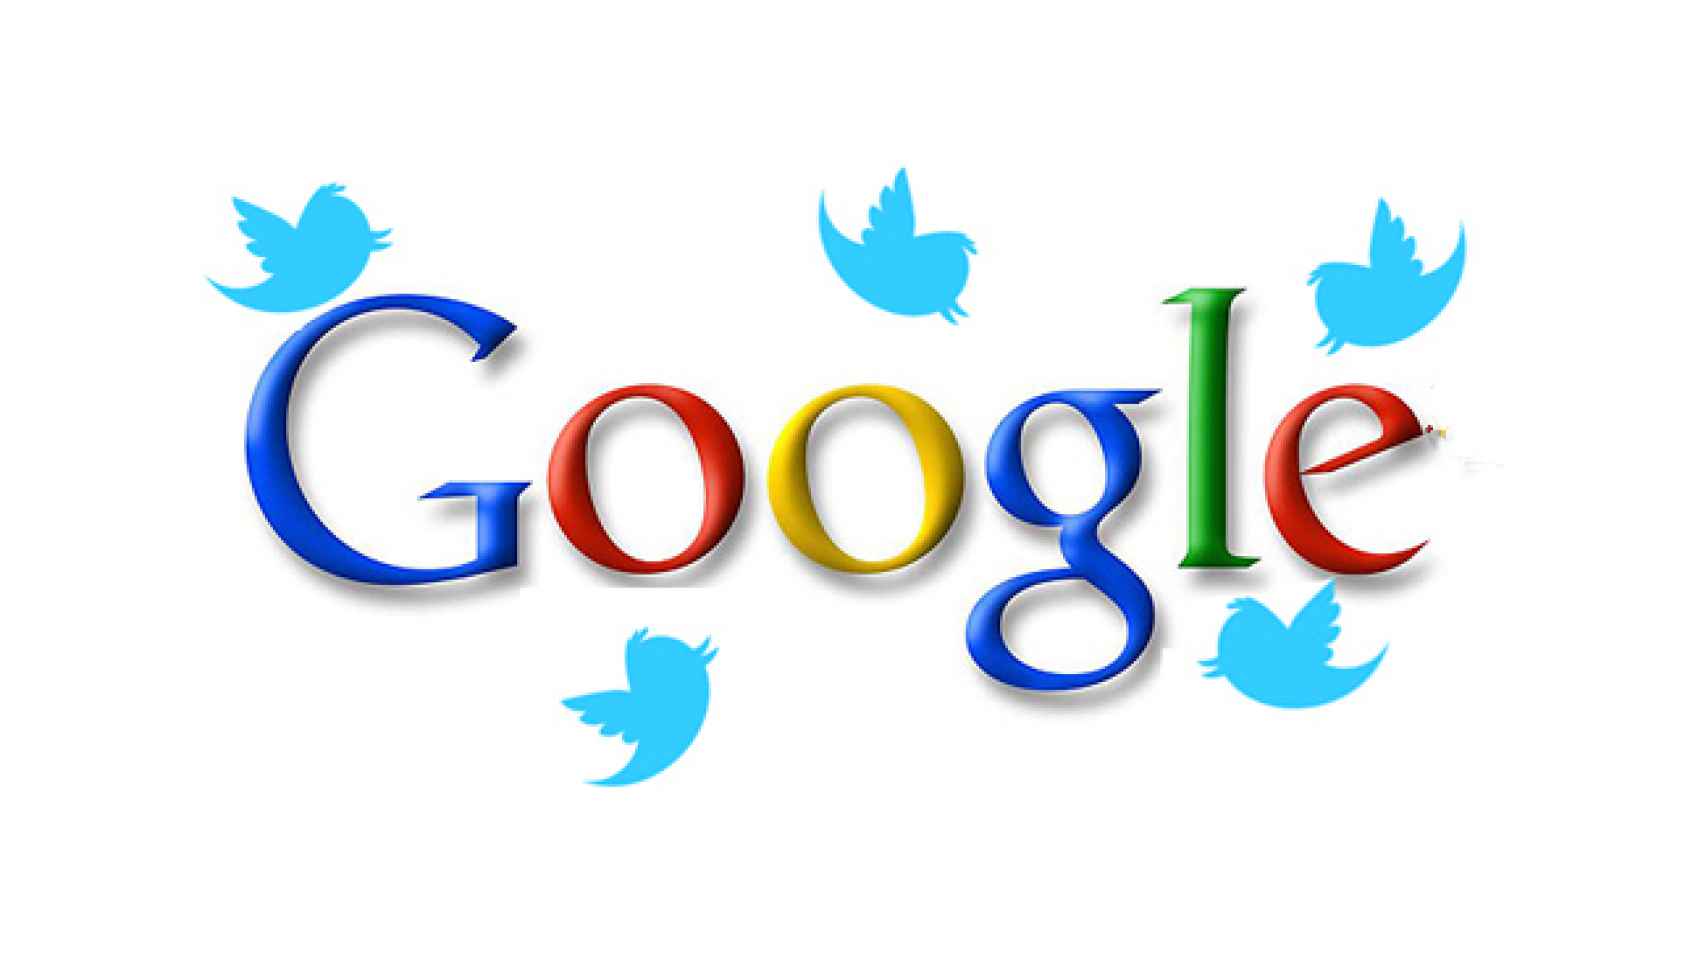 Google enseñará tus tweets completos en sus búsquedas desde hoy